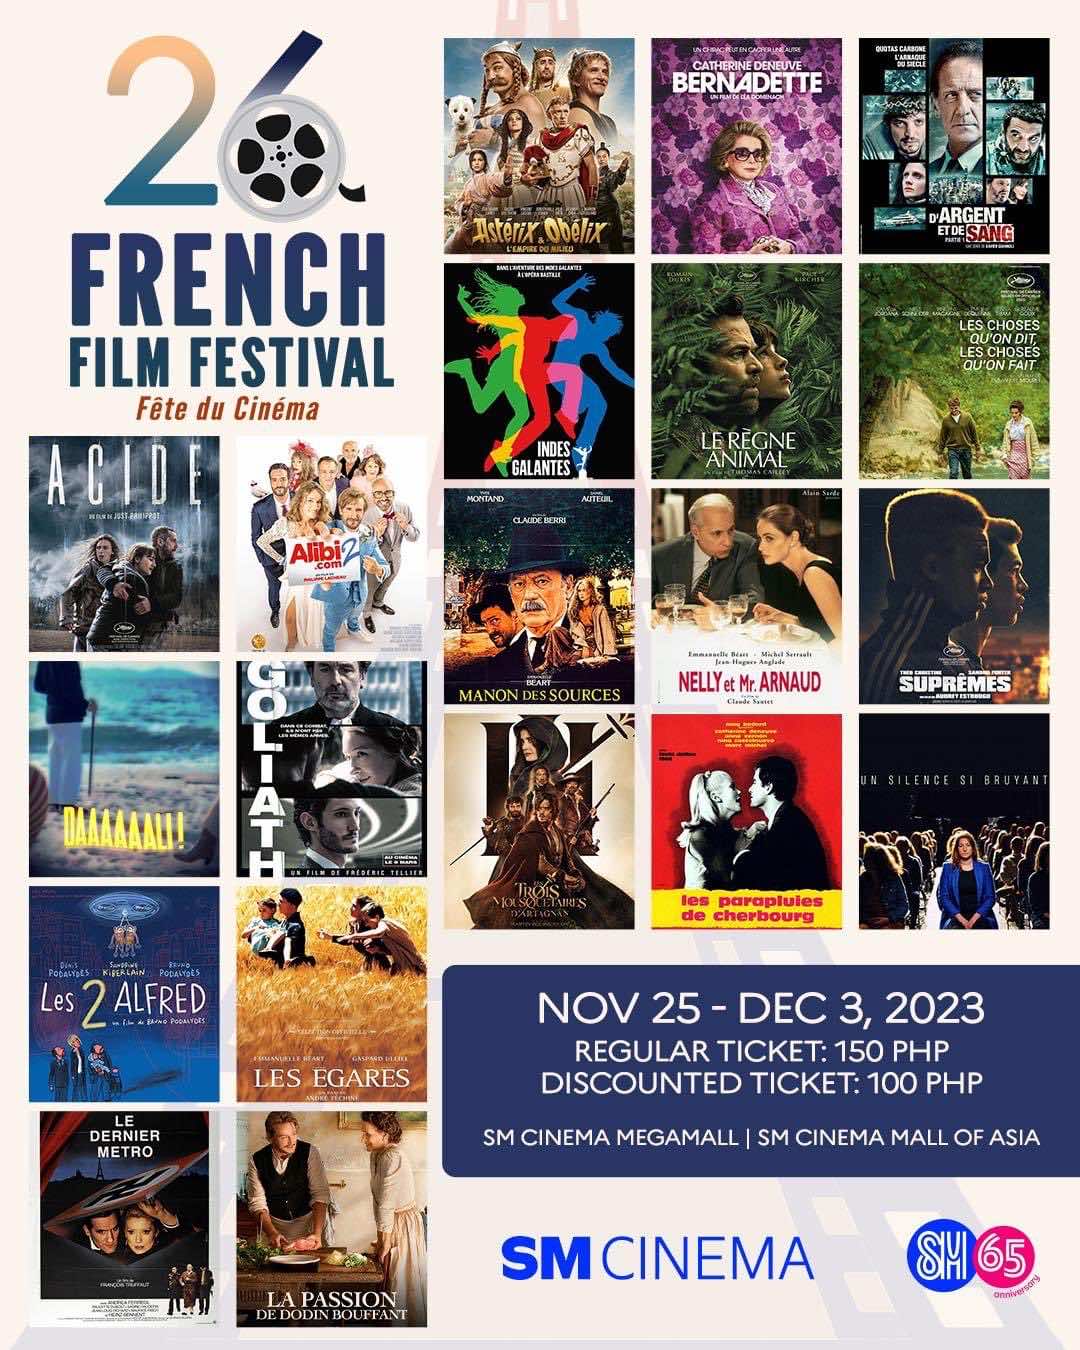 26th French Film Festival 2023